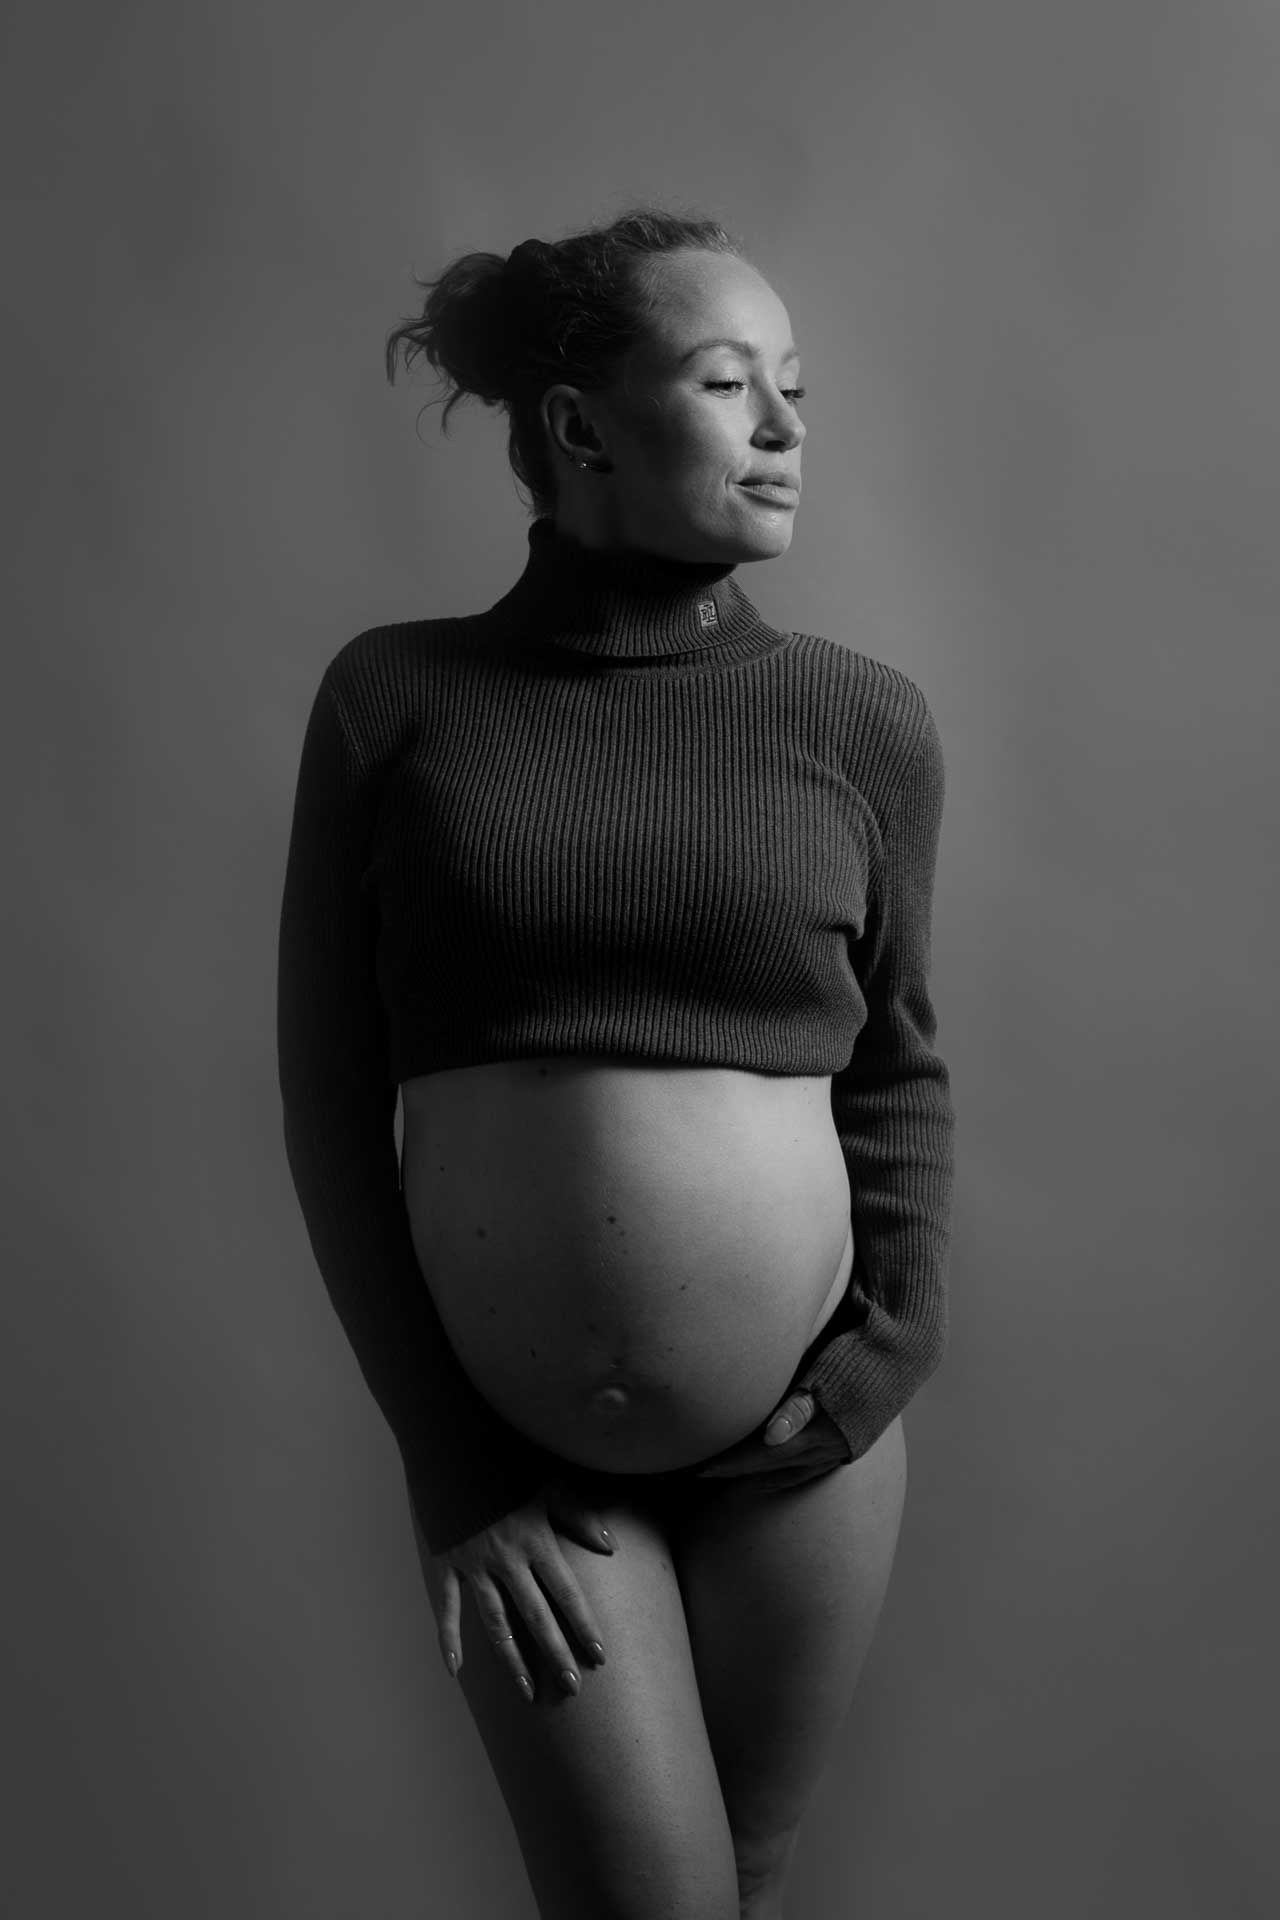 Billeder af graviditetsbilleder